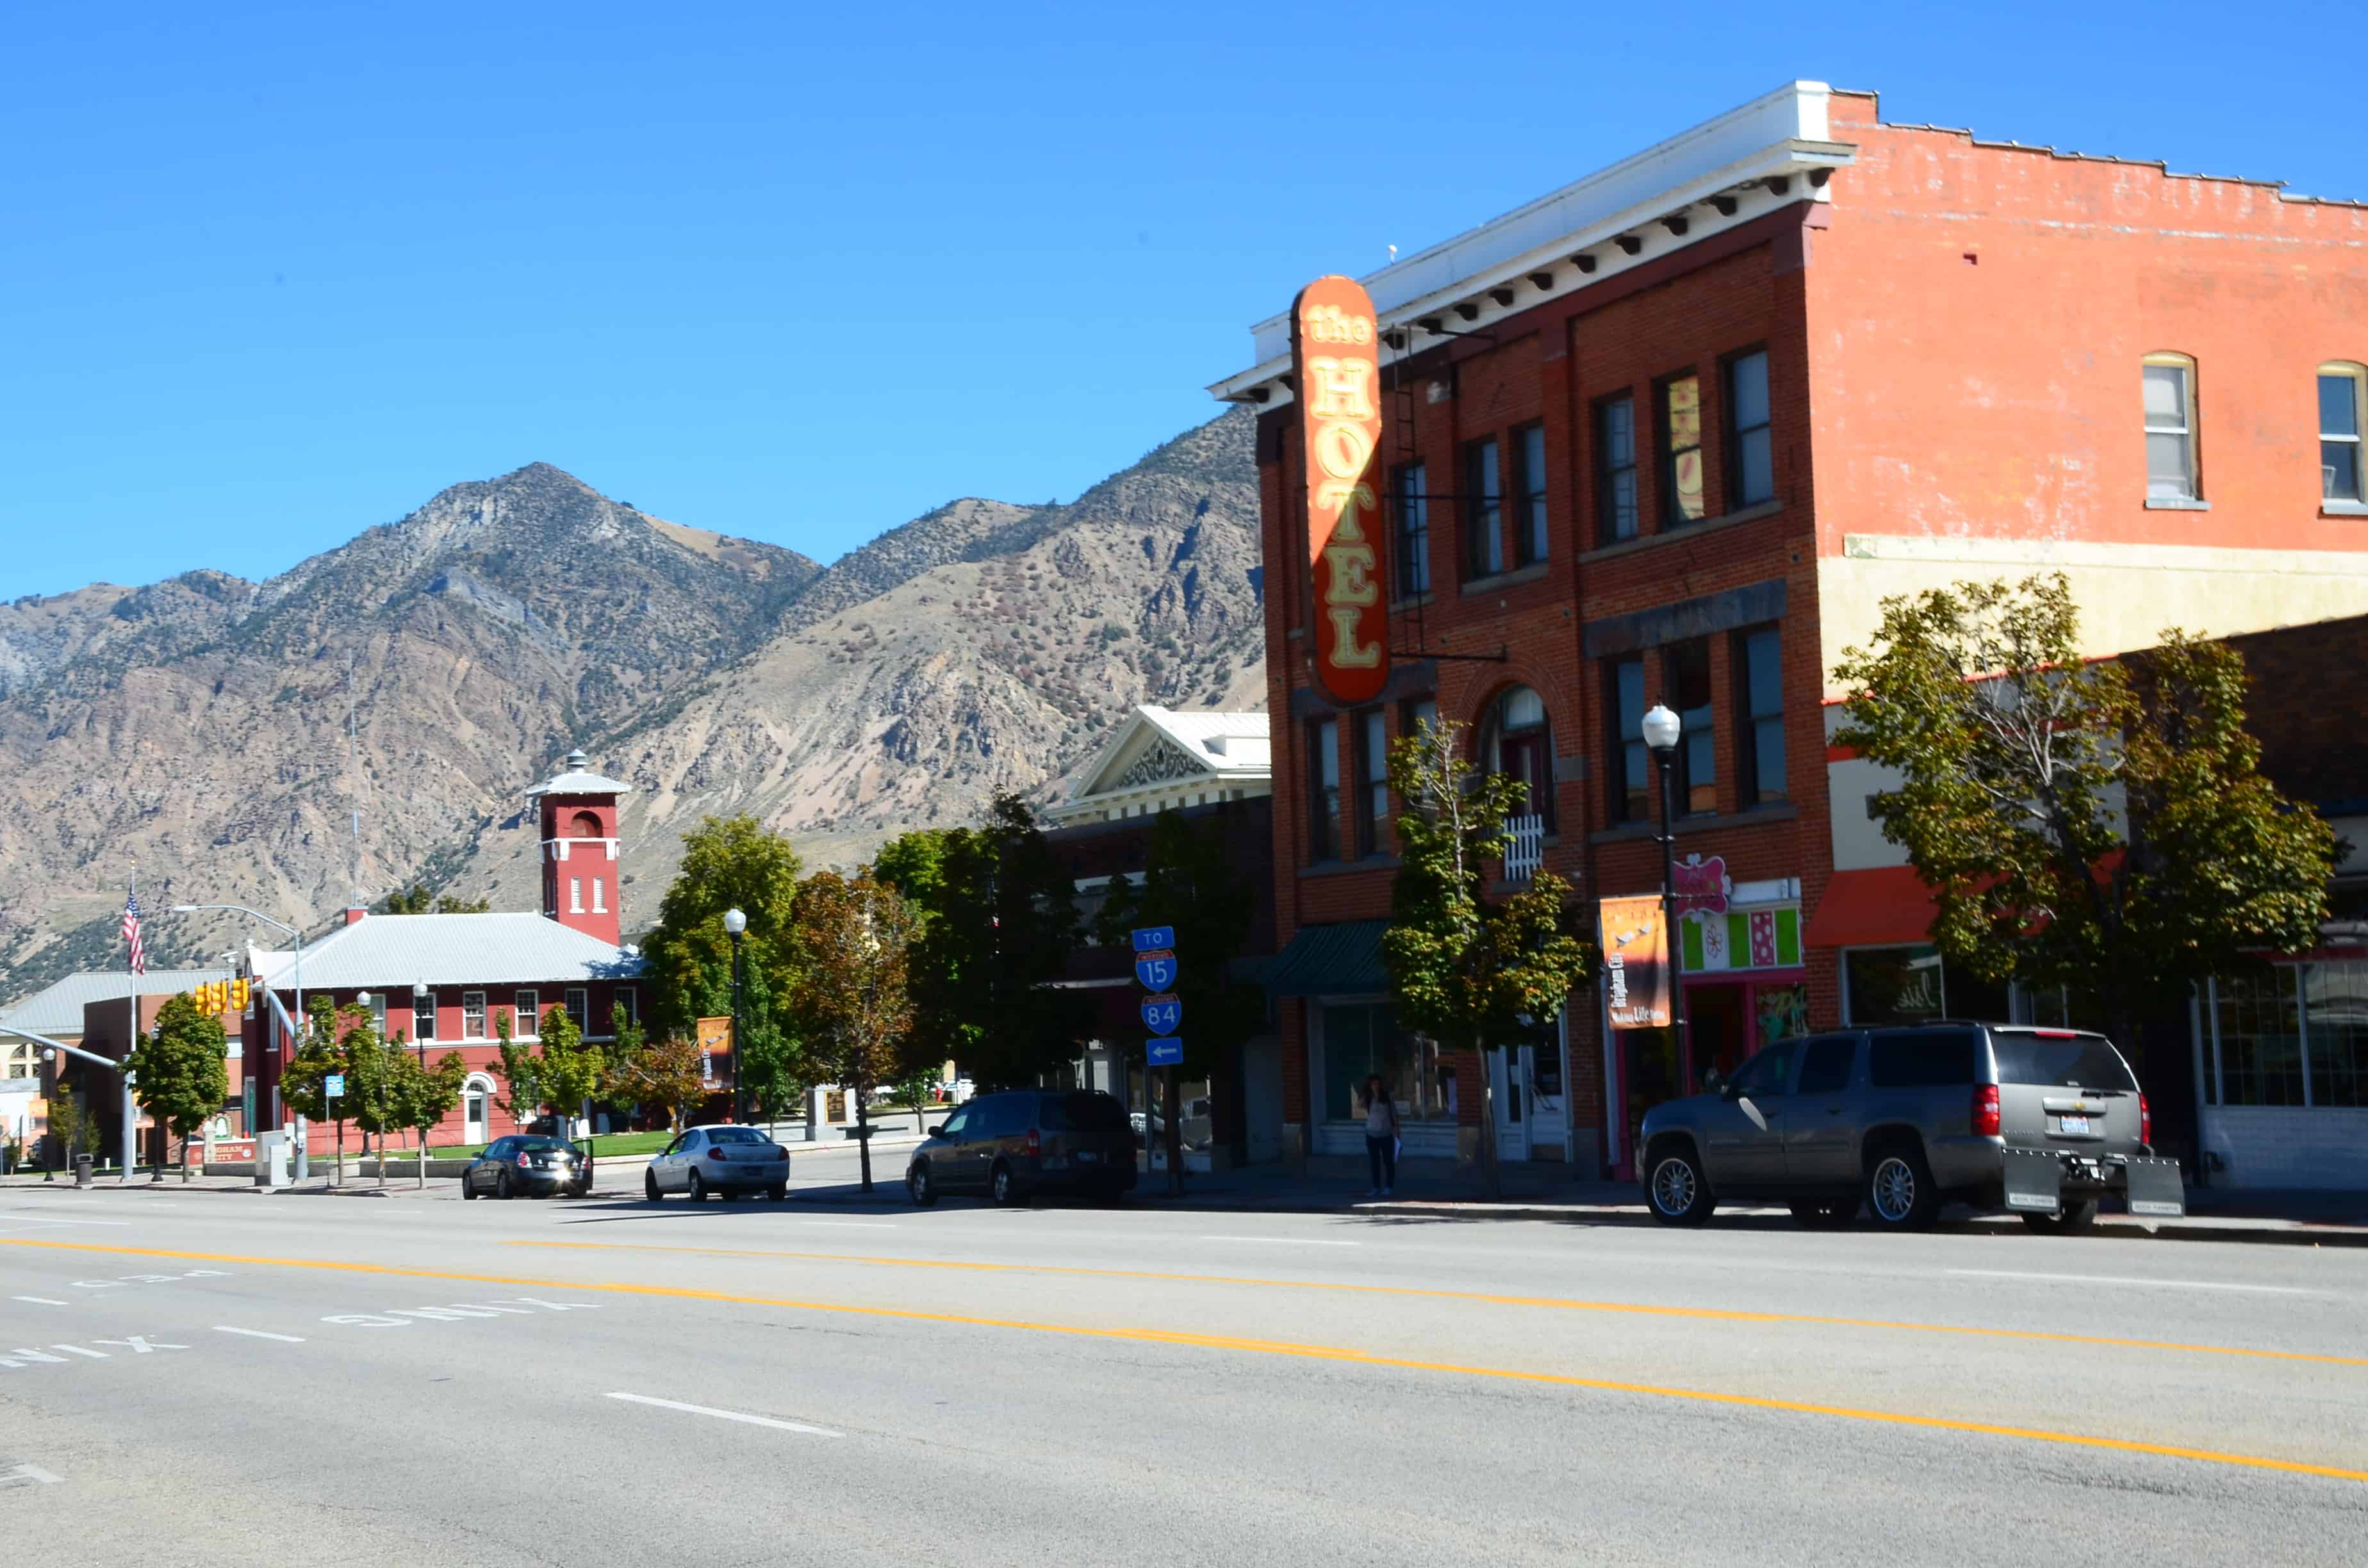 Main Street in Brigham City, Utah